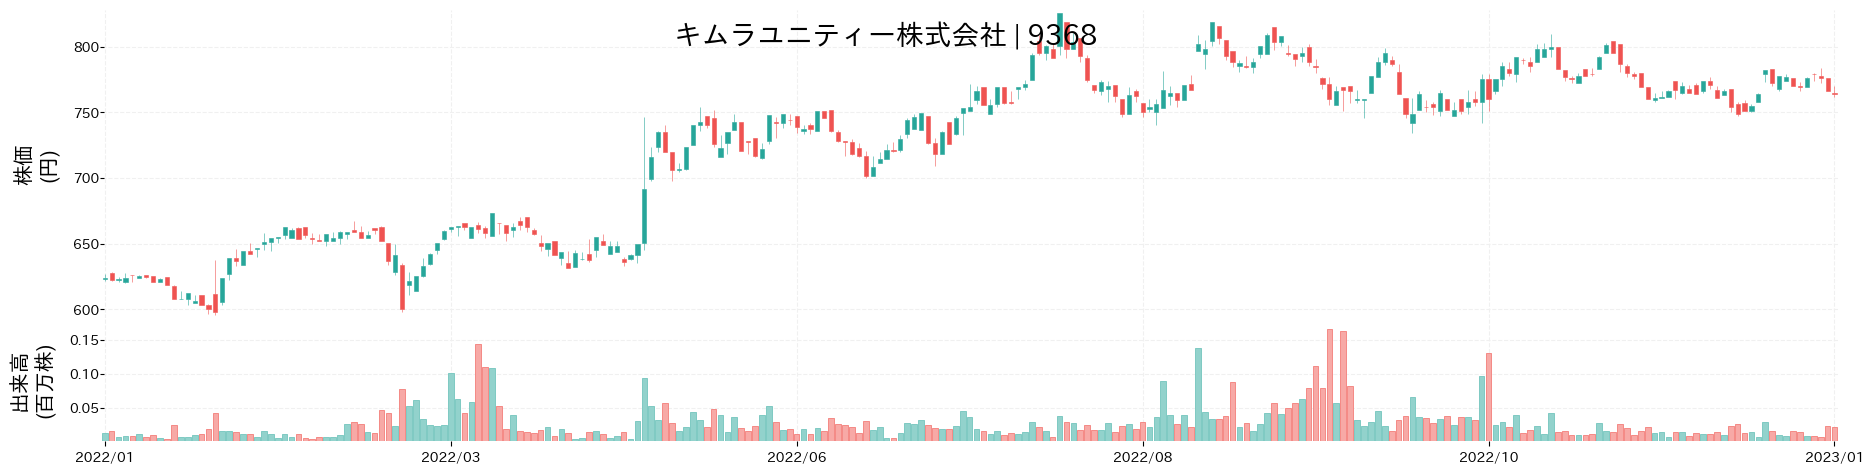 キムラユニティーの株価推移(2022)